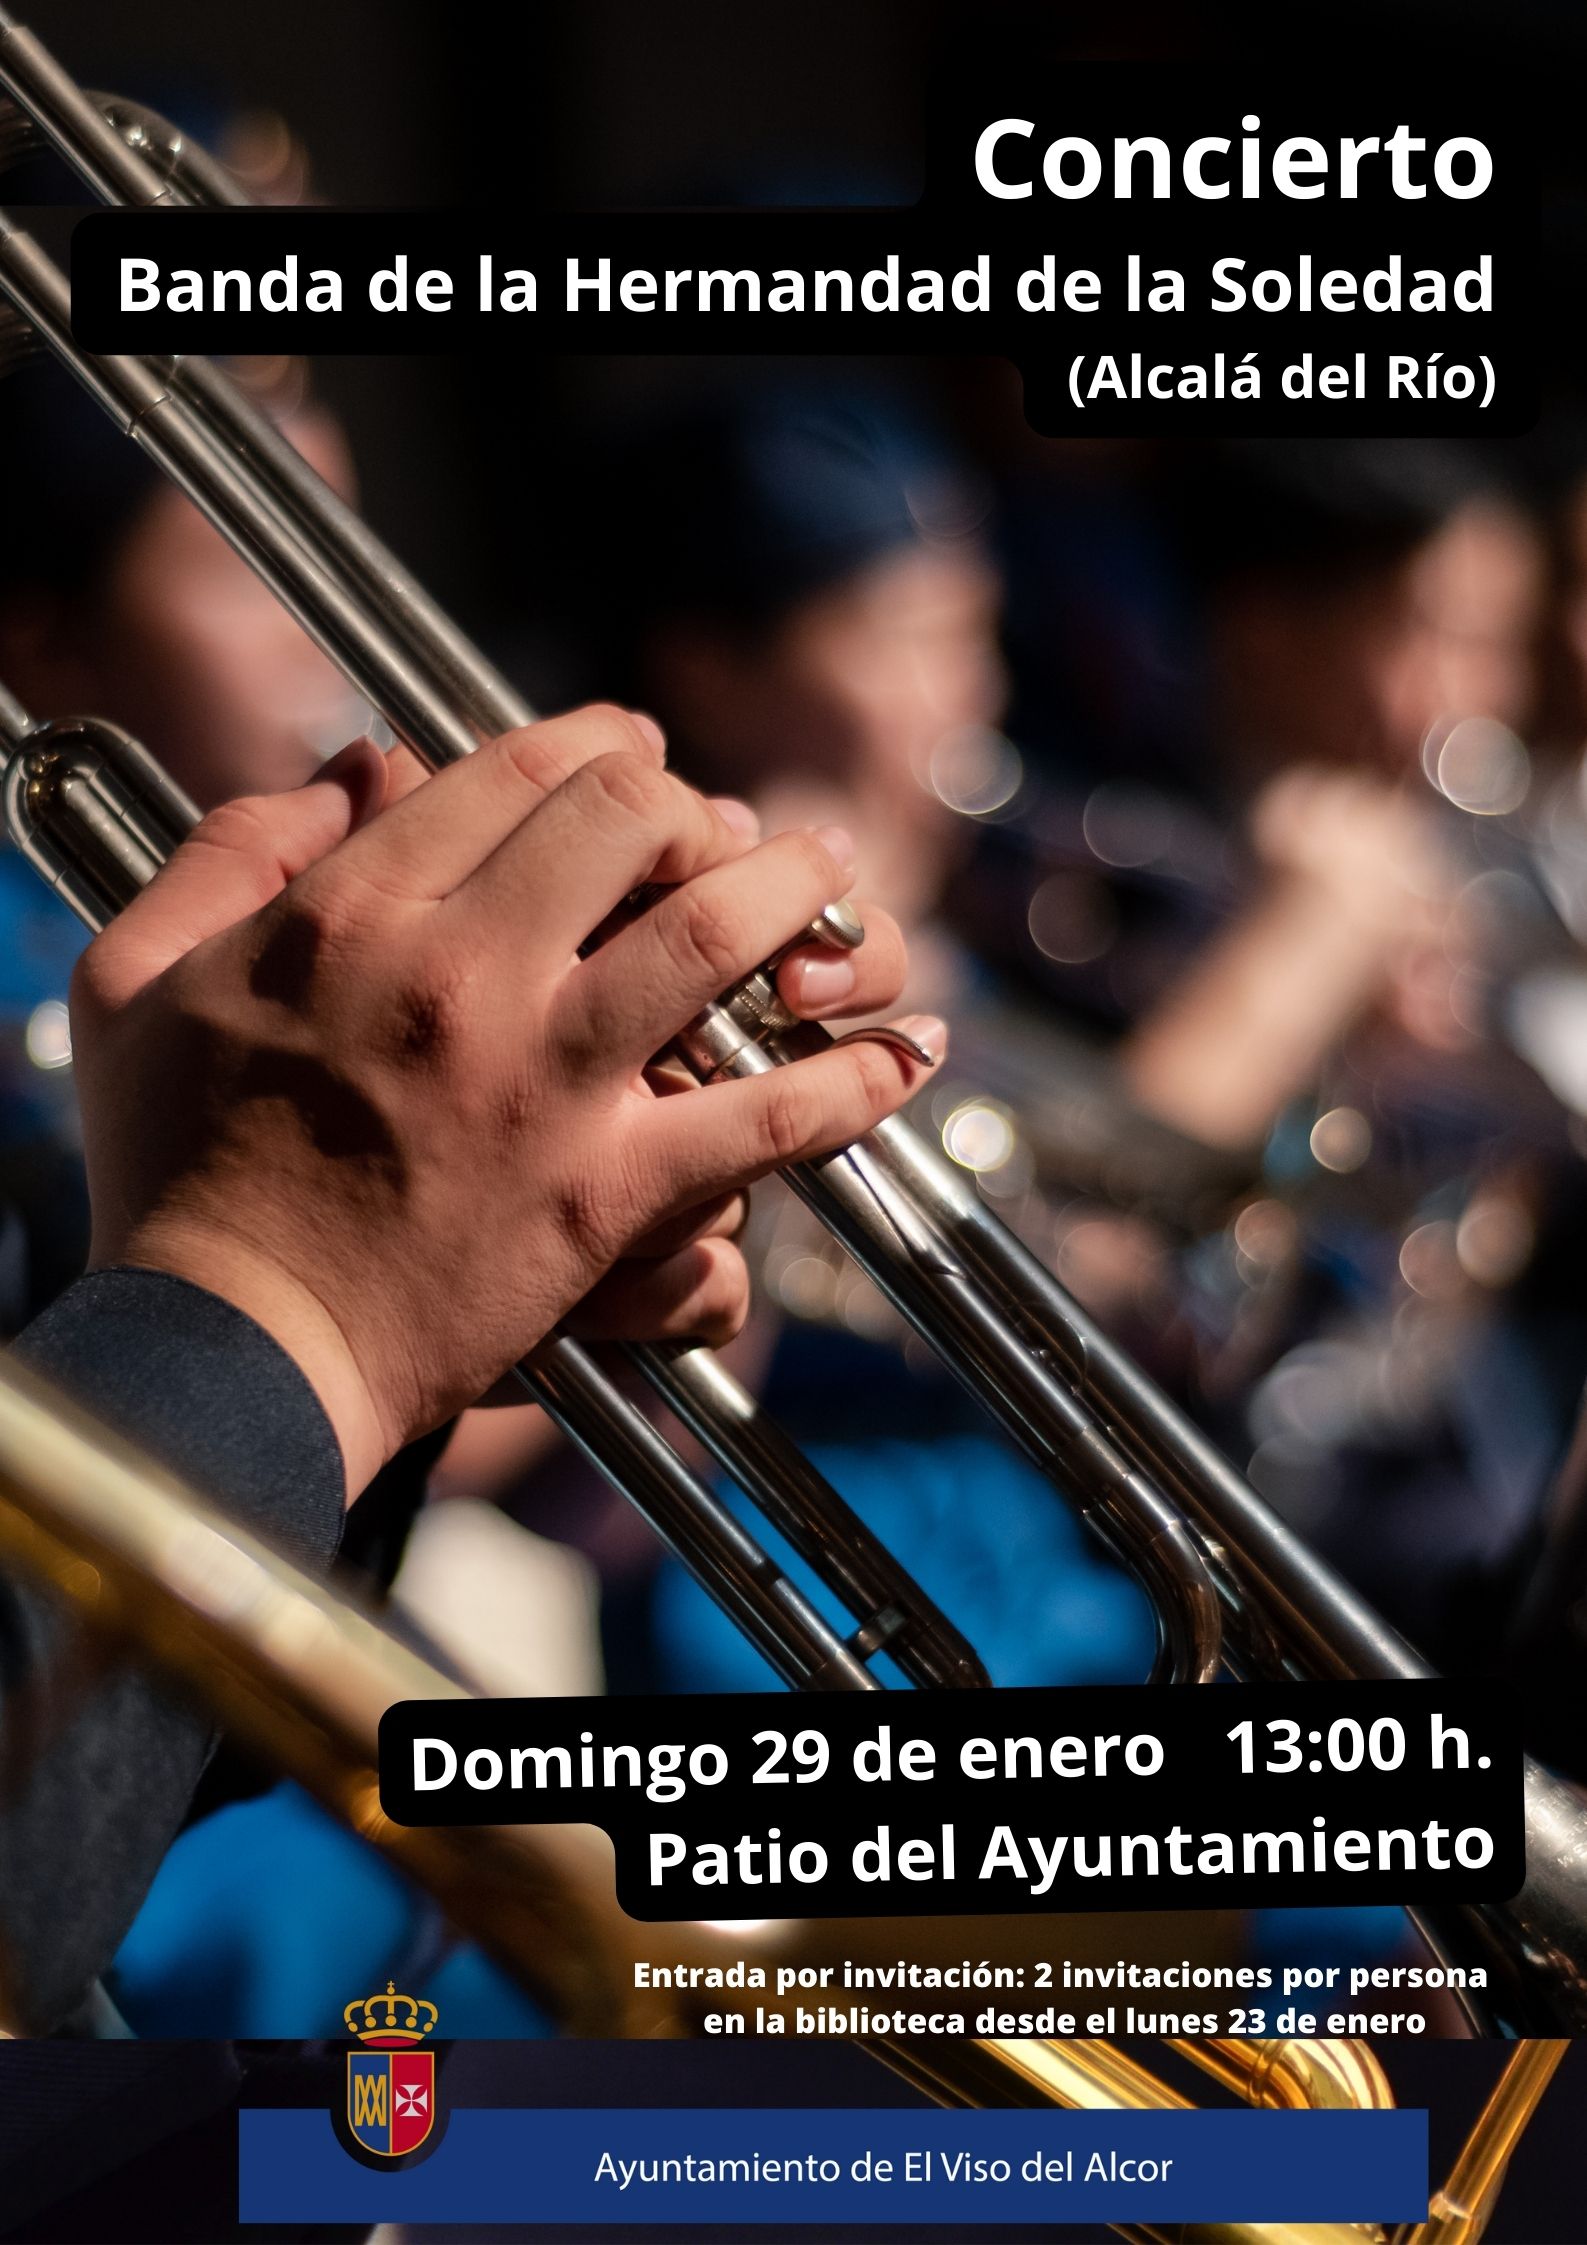 Concierto Banda de la Hermandad de la Soledad (Alcalá del Río)